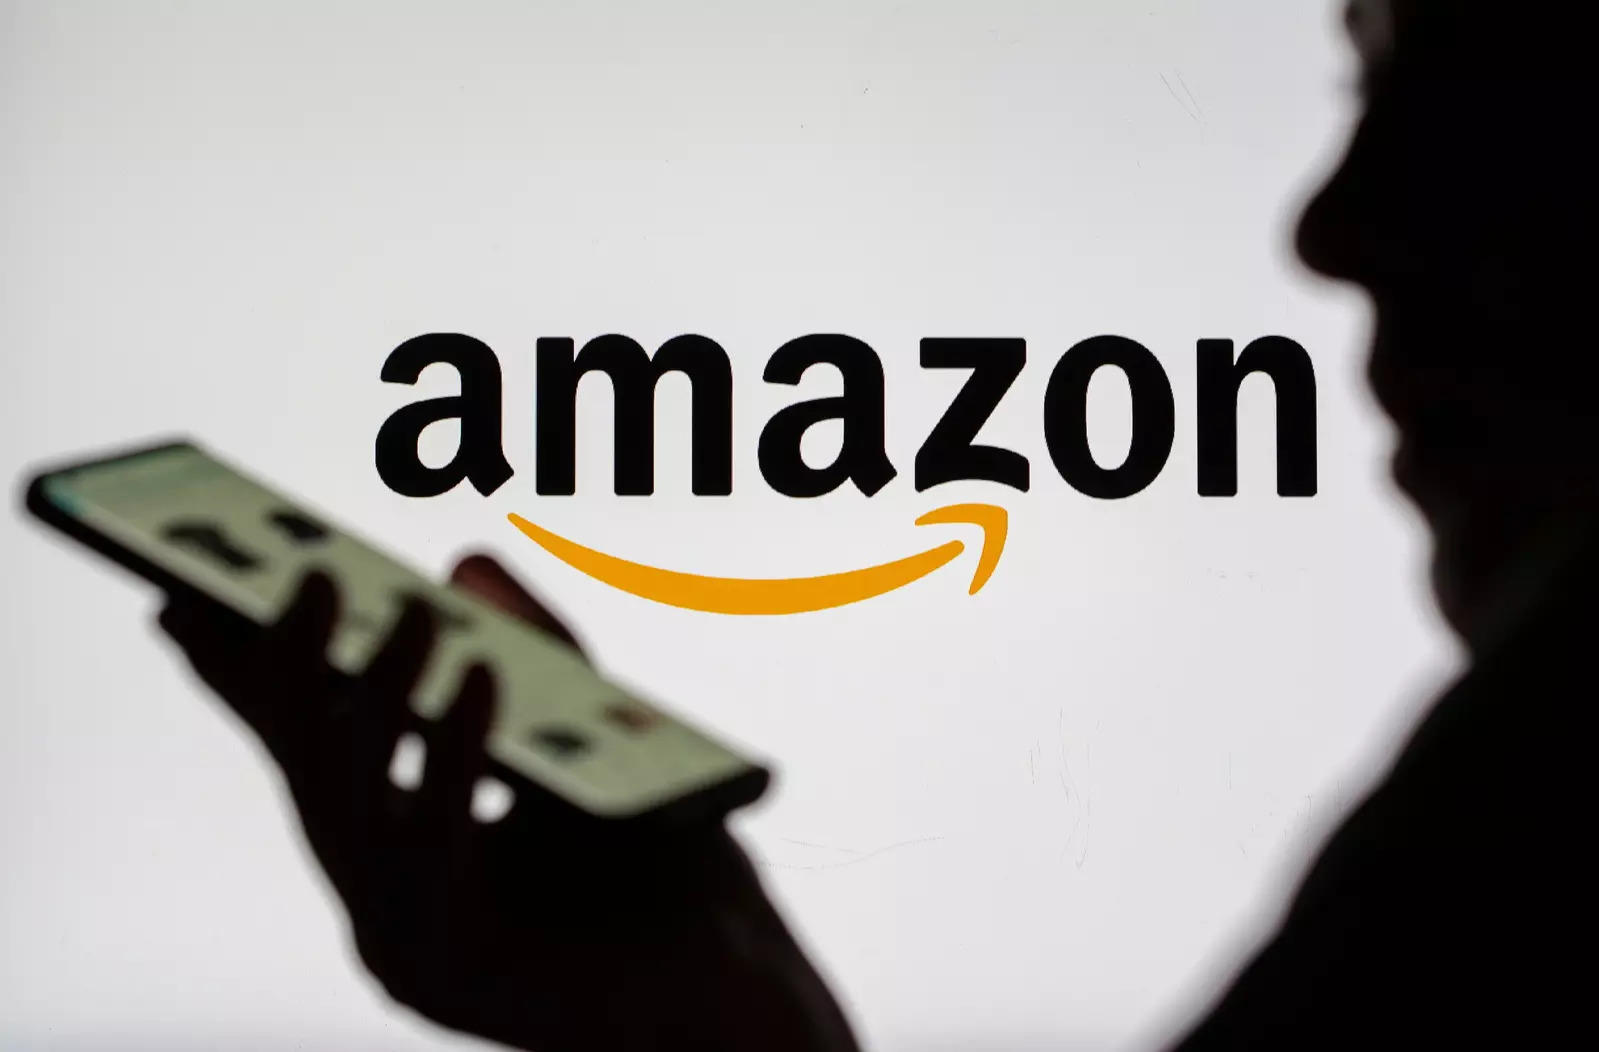  “Gã khổng lồ” Amazon hết thời thâu tóm thị trường Mỹ do sức ép từ doanh nghiệp Trung Quốc? - Ảnh 1.